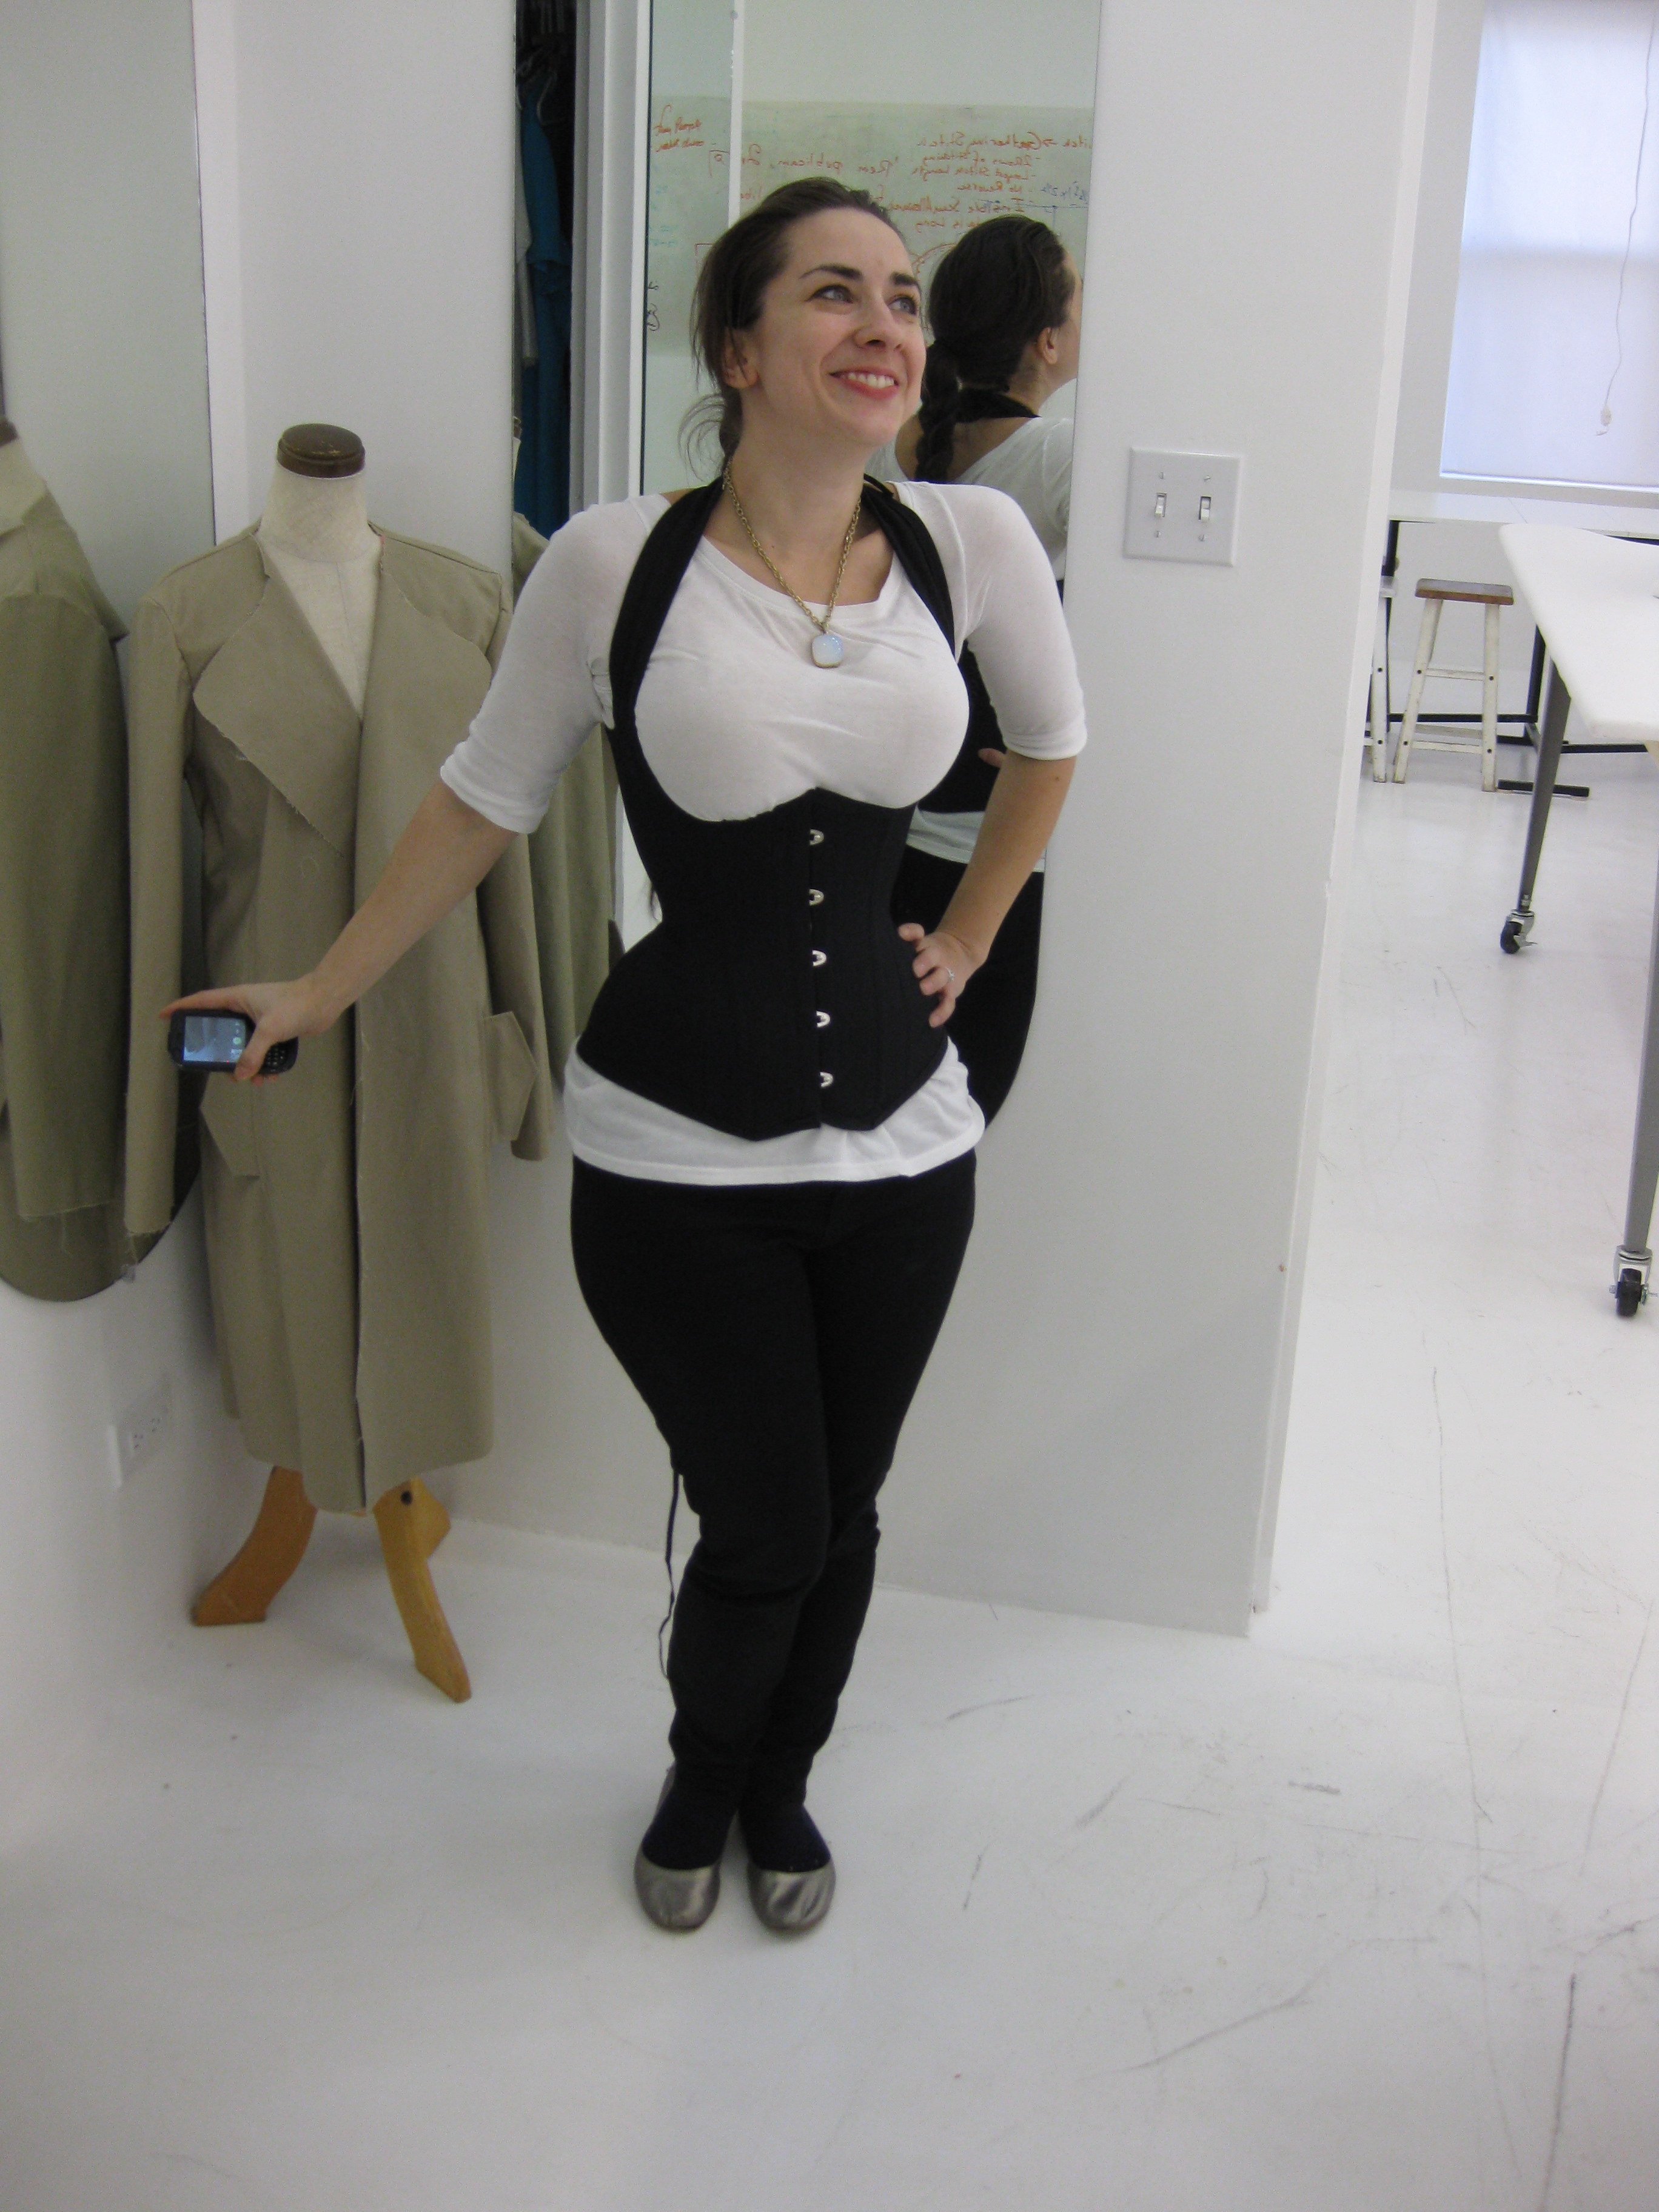 Tchad: corset: decima: workroom: sewing classes